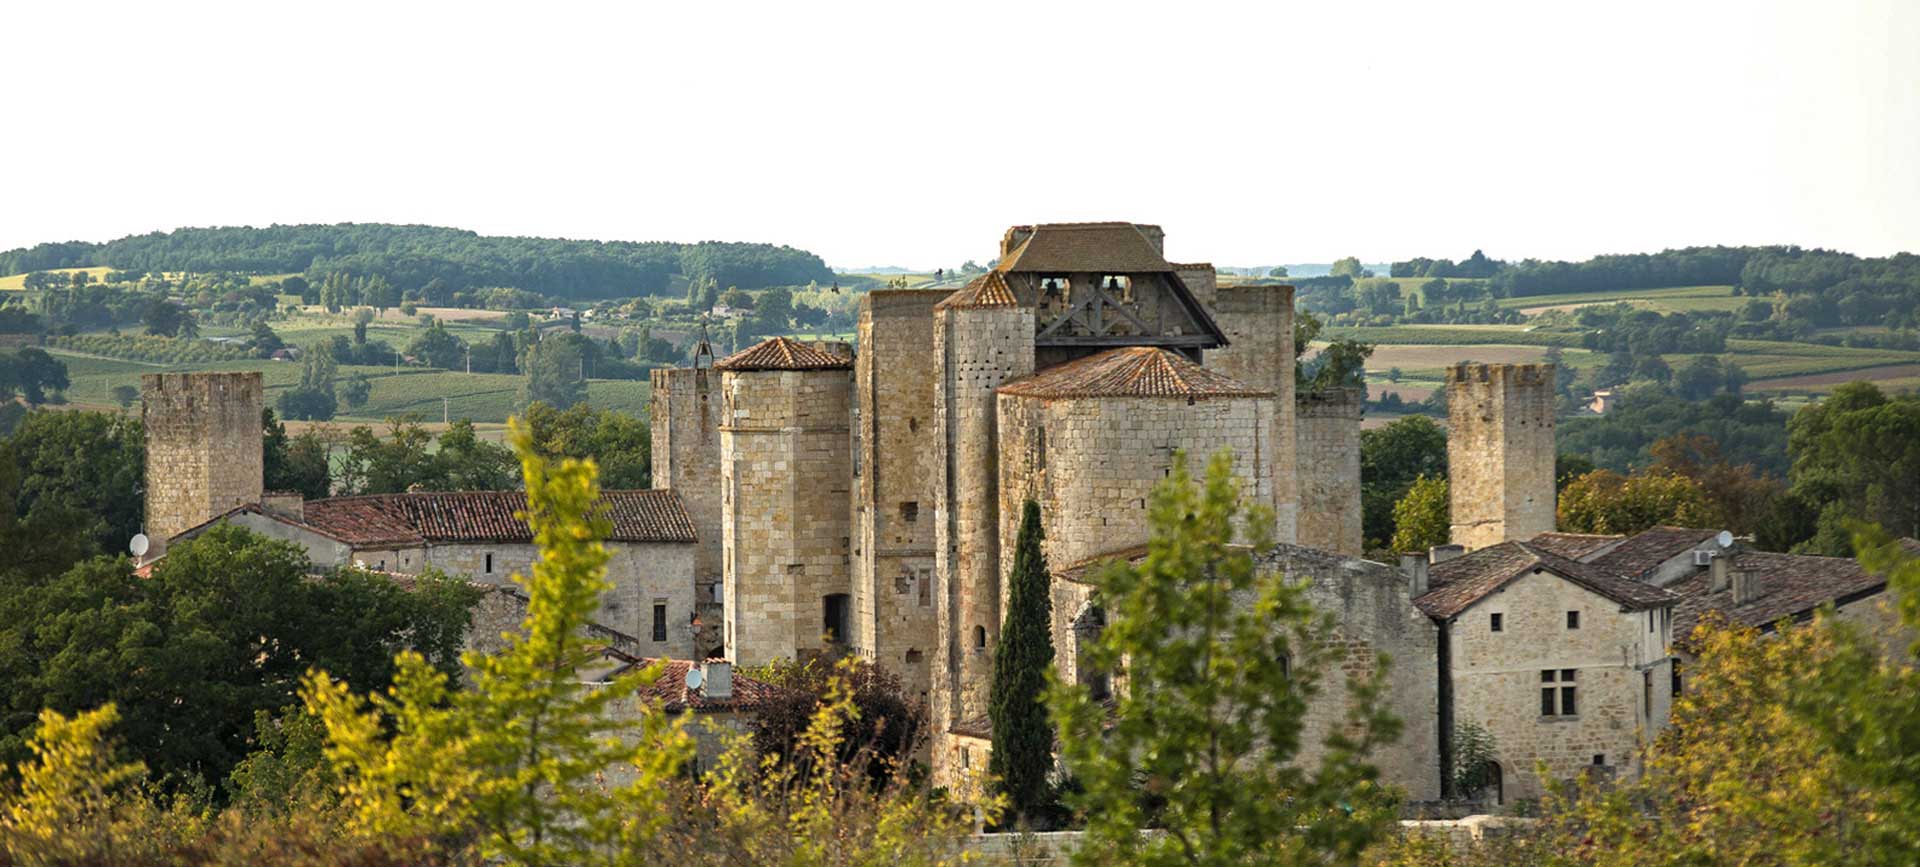 Village fortifé de Larressingle dans le Gers